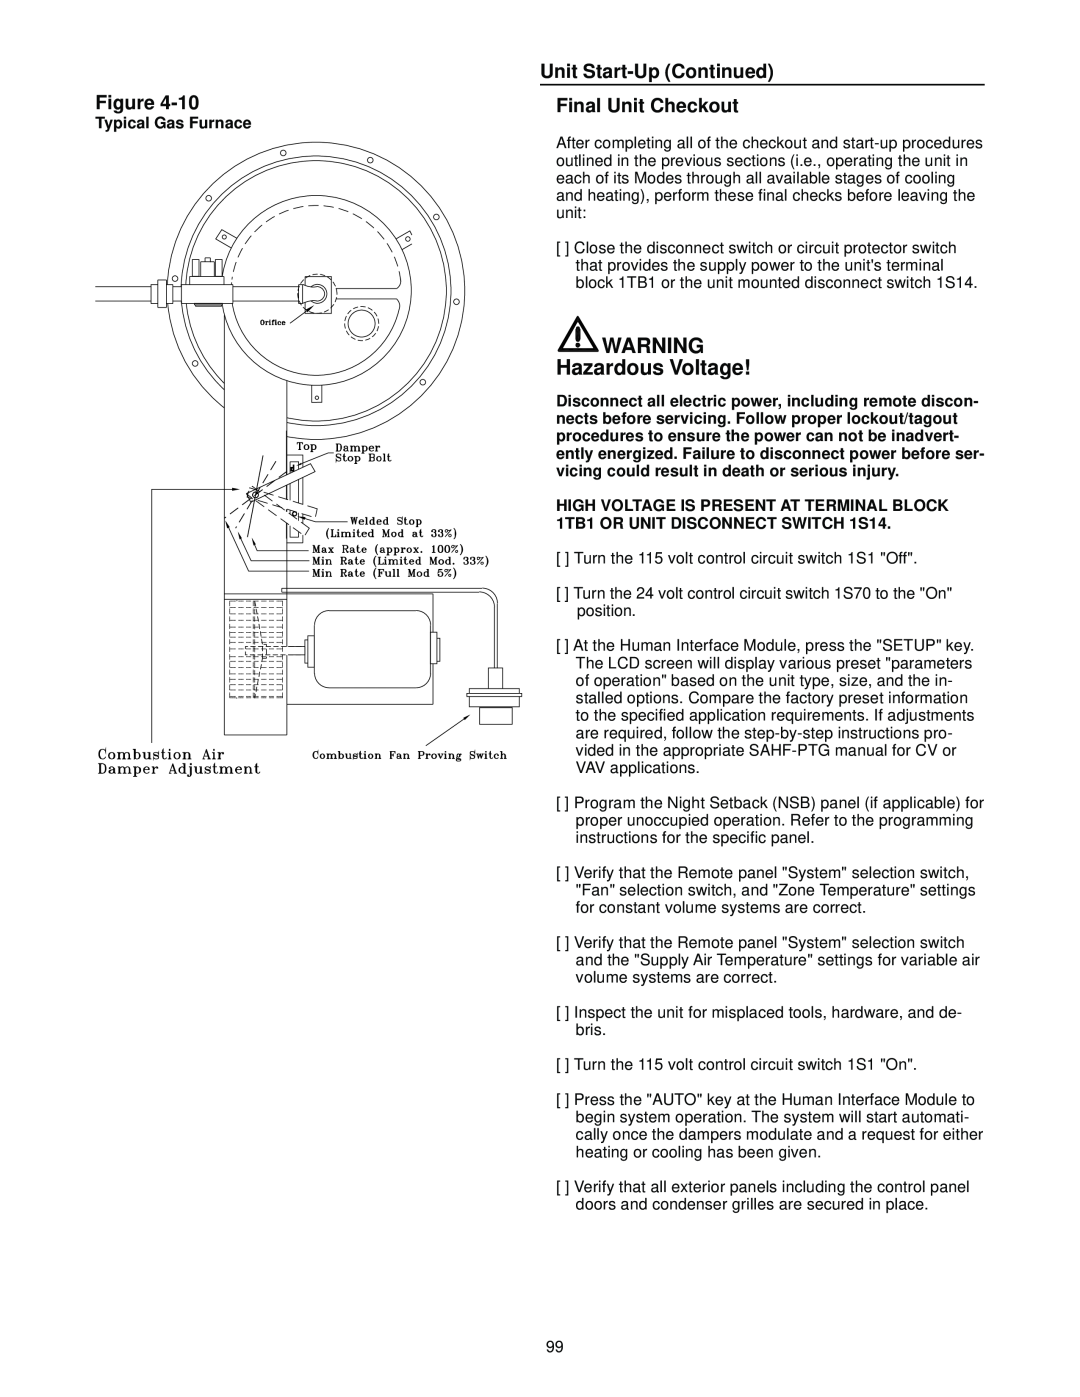 Trane RT-SVX10C-EN specifications Unit Start-UpContinued Final Unit Checkout, Hazardous Voltage, Figure 